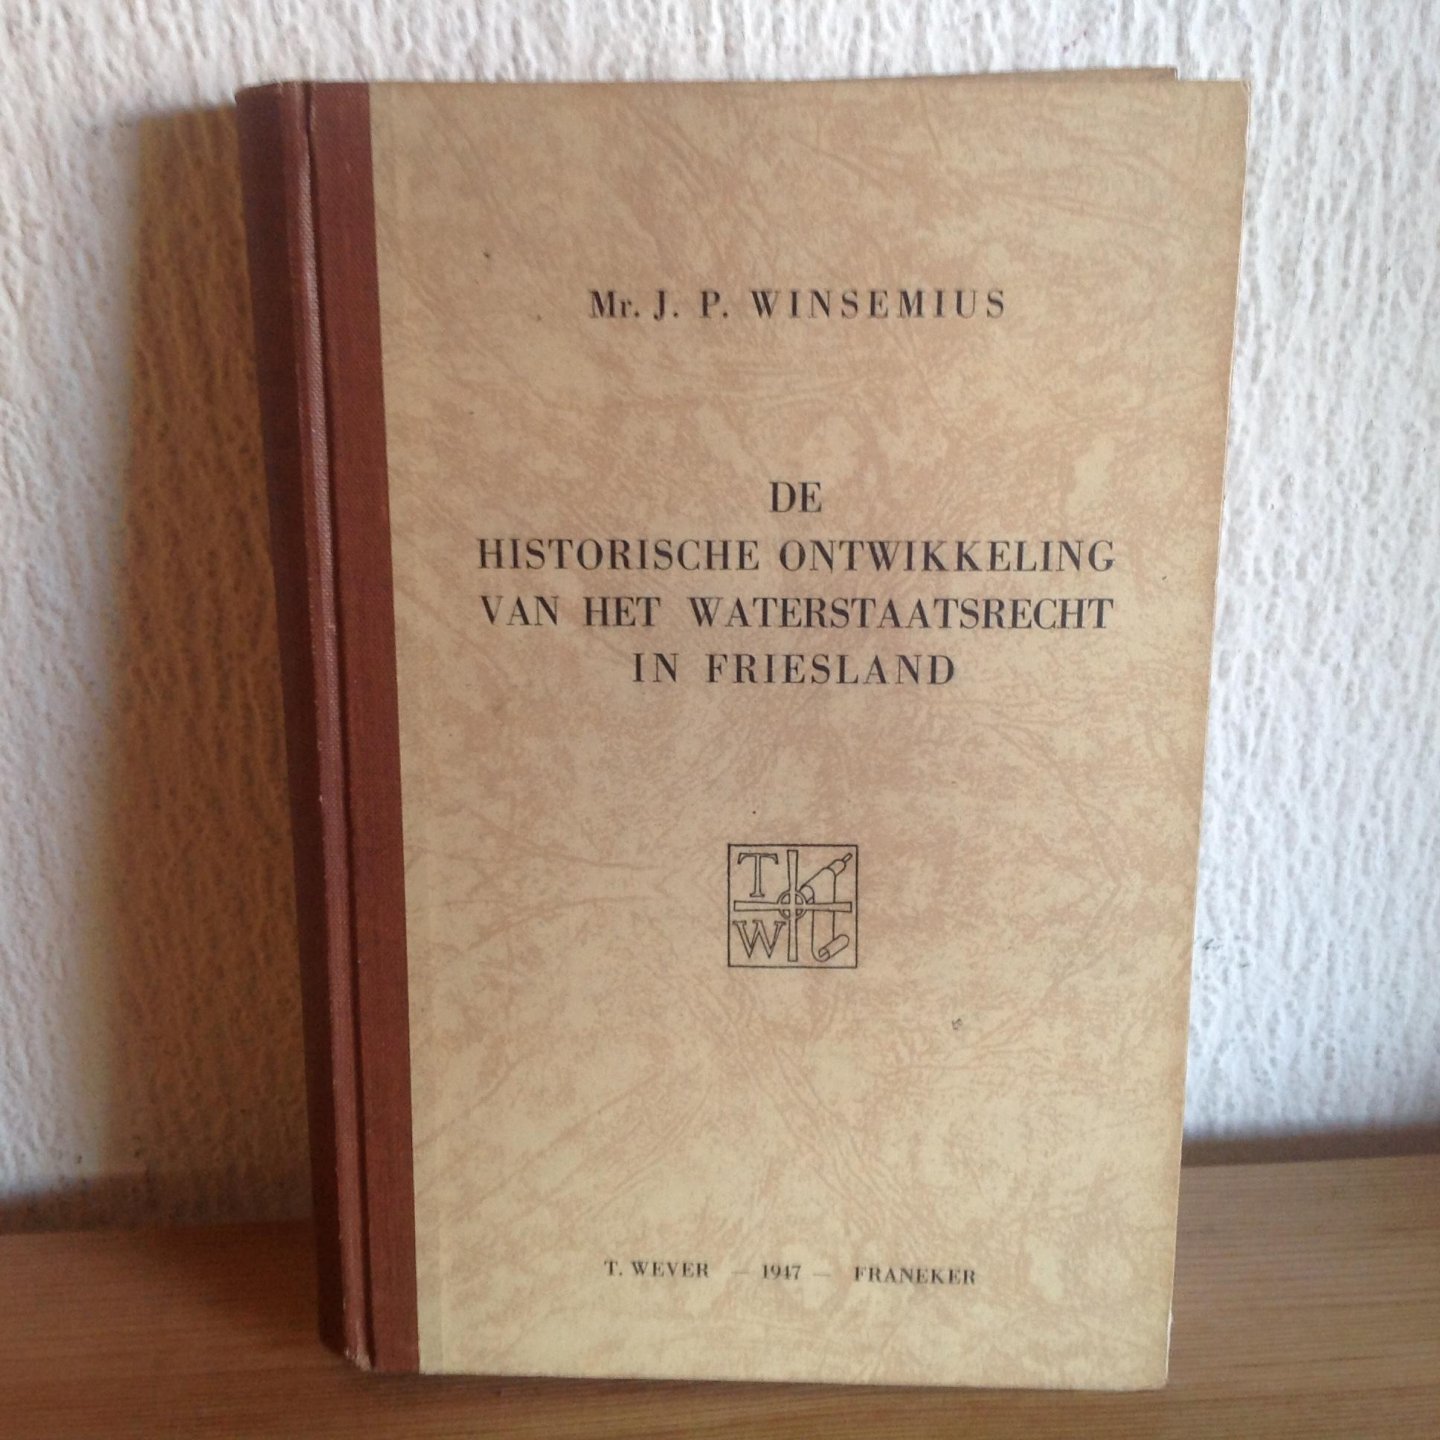 Mr J P Winsemius - De Historische ontwikkeling van het waterstaatsrecht in Friesland